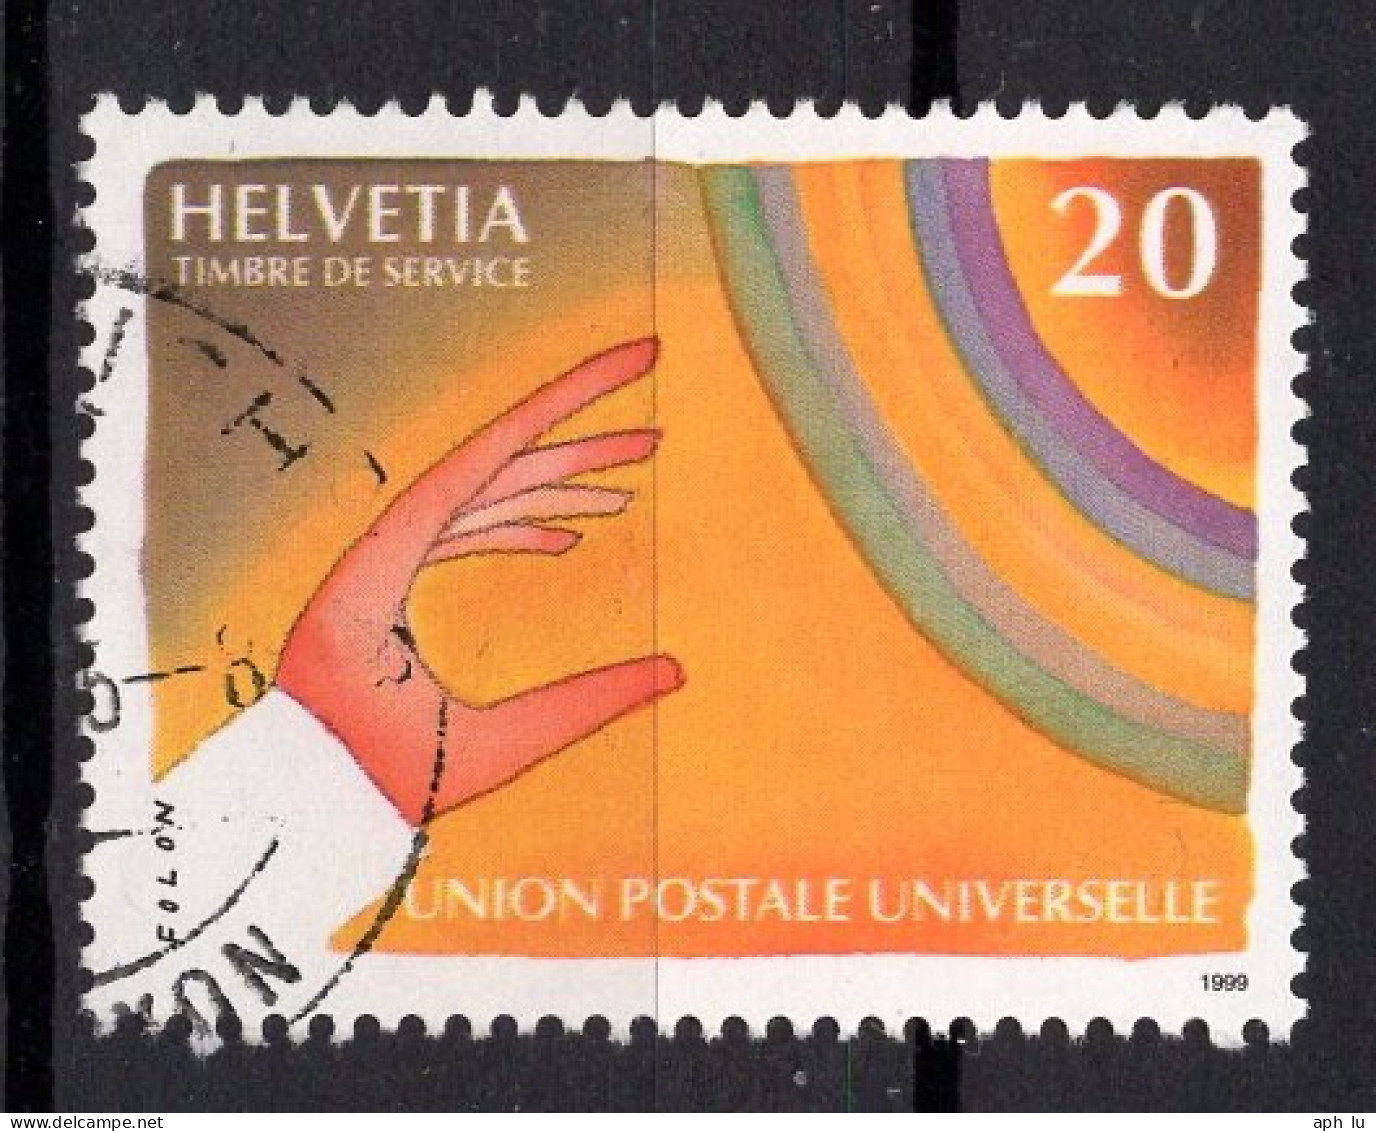 Union Postale Universelle (UPU) (h600903) - Servizio